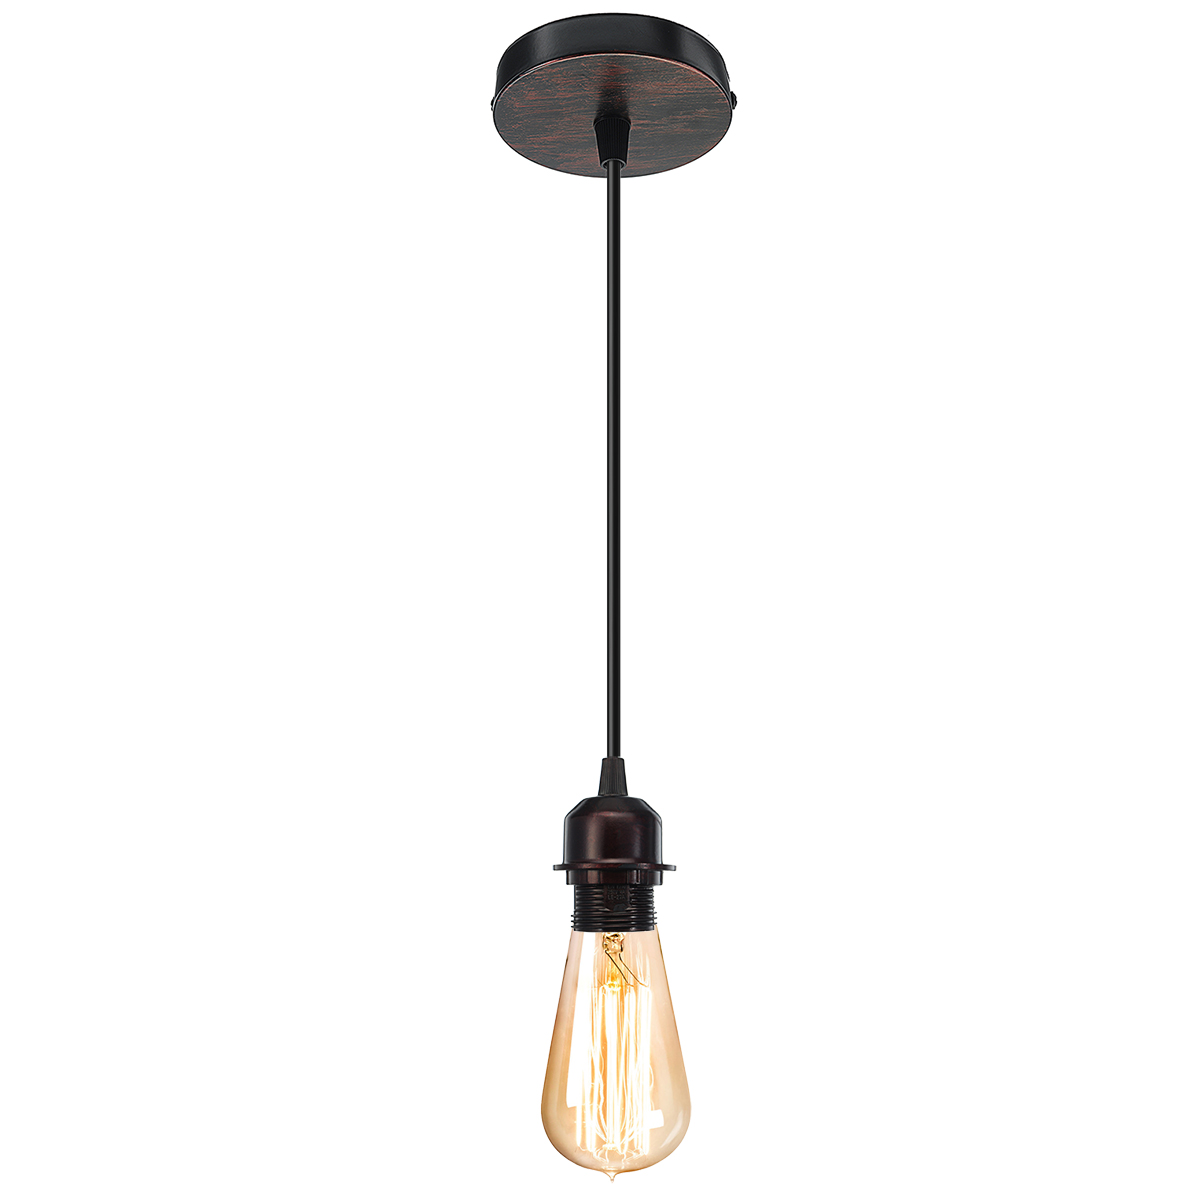 E27-Ceiling-Pendant-Lamp-Holder-Socket-Base-Light-Hanging-Fitting-Lighting-Decor-AC110-220V-1403441-2